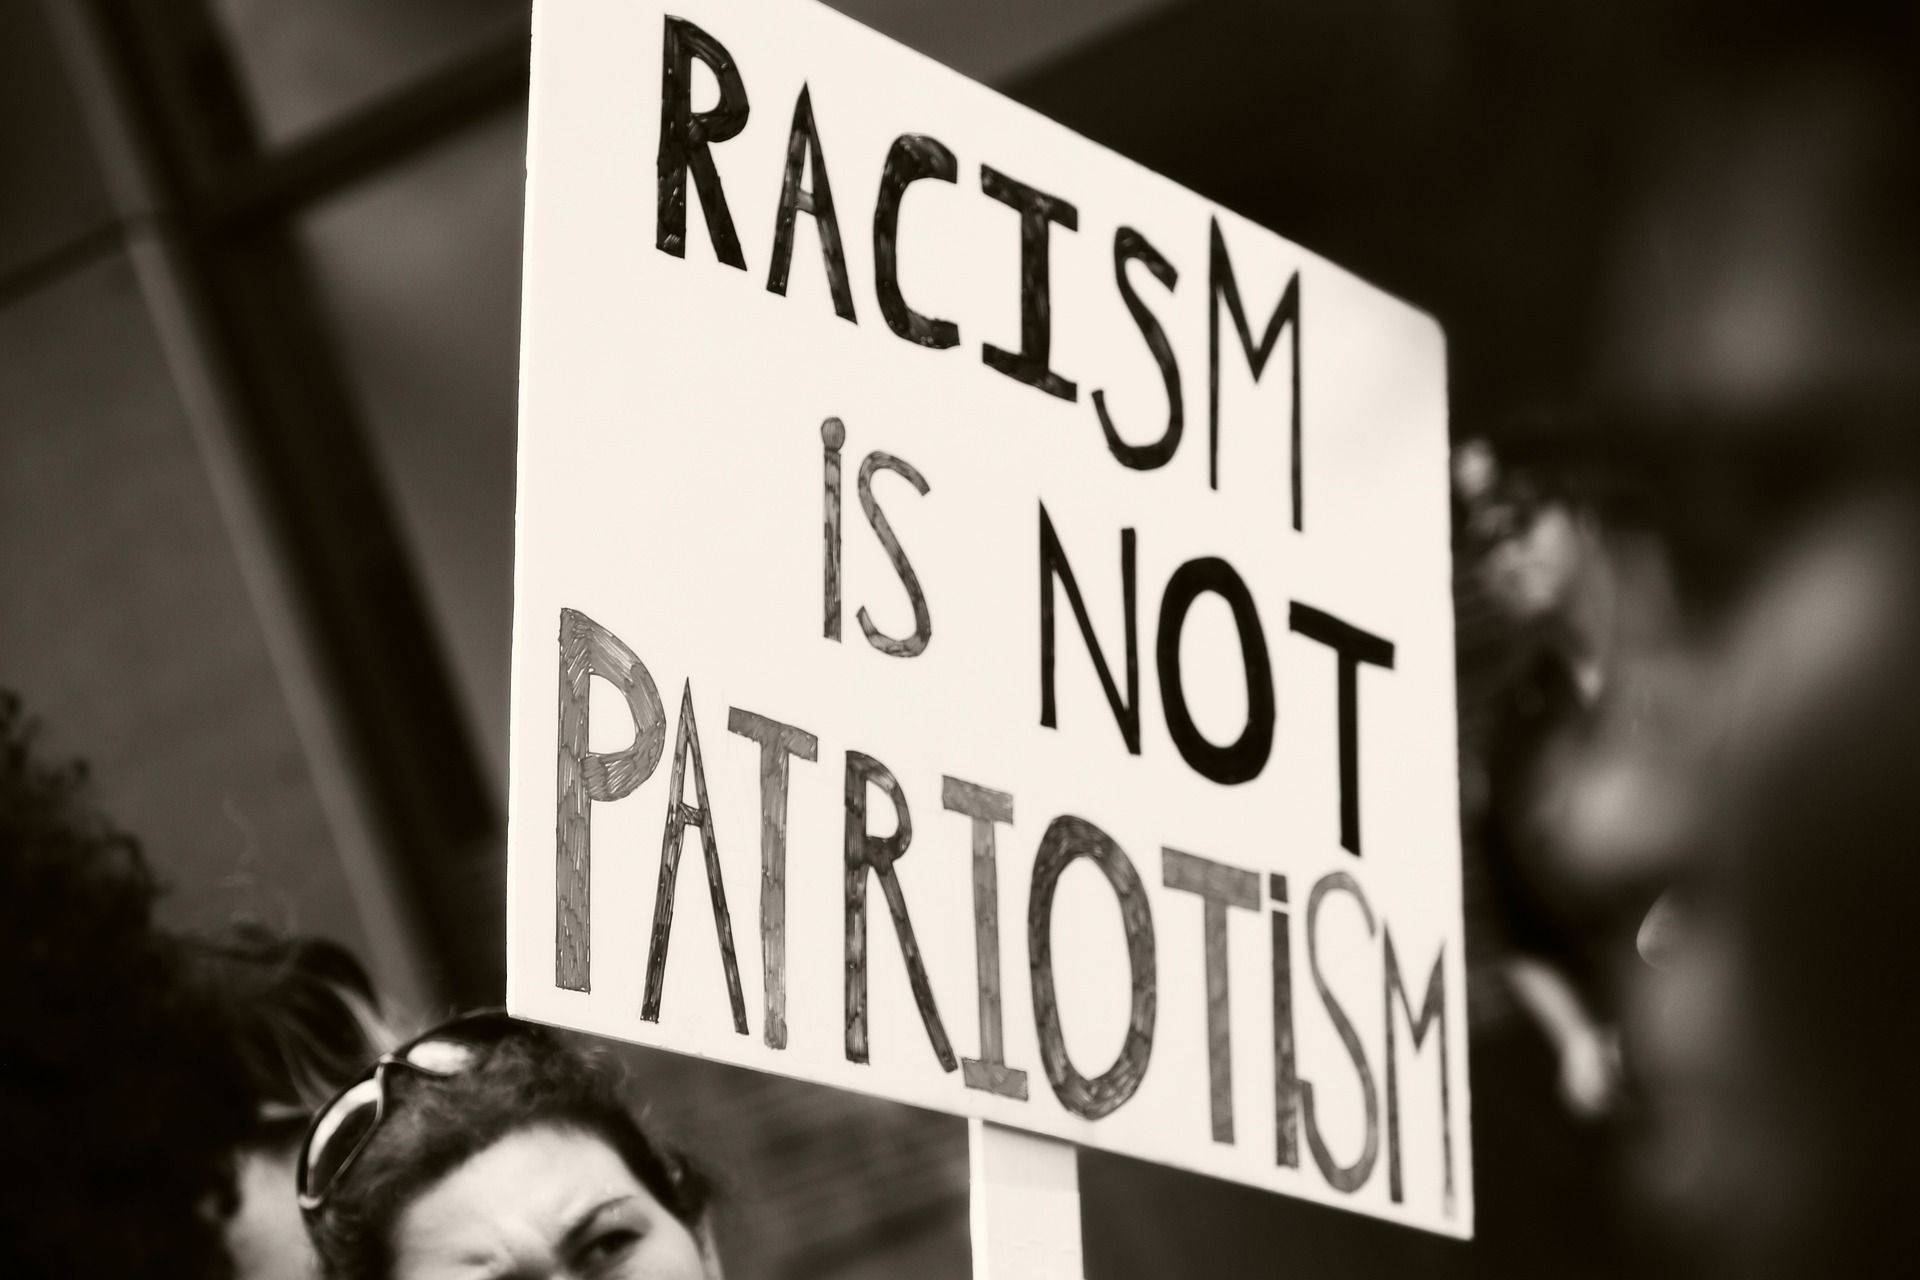 Schild mit der Auffschrift: "Racism is not patriotism"